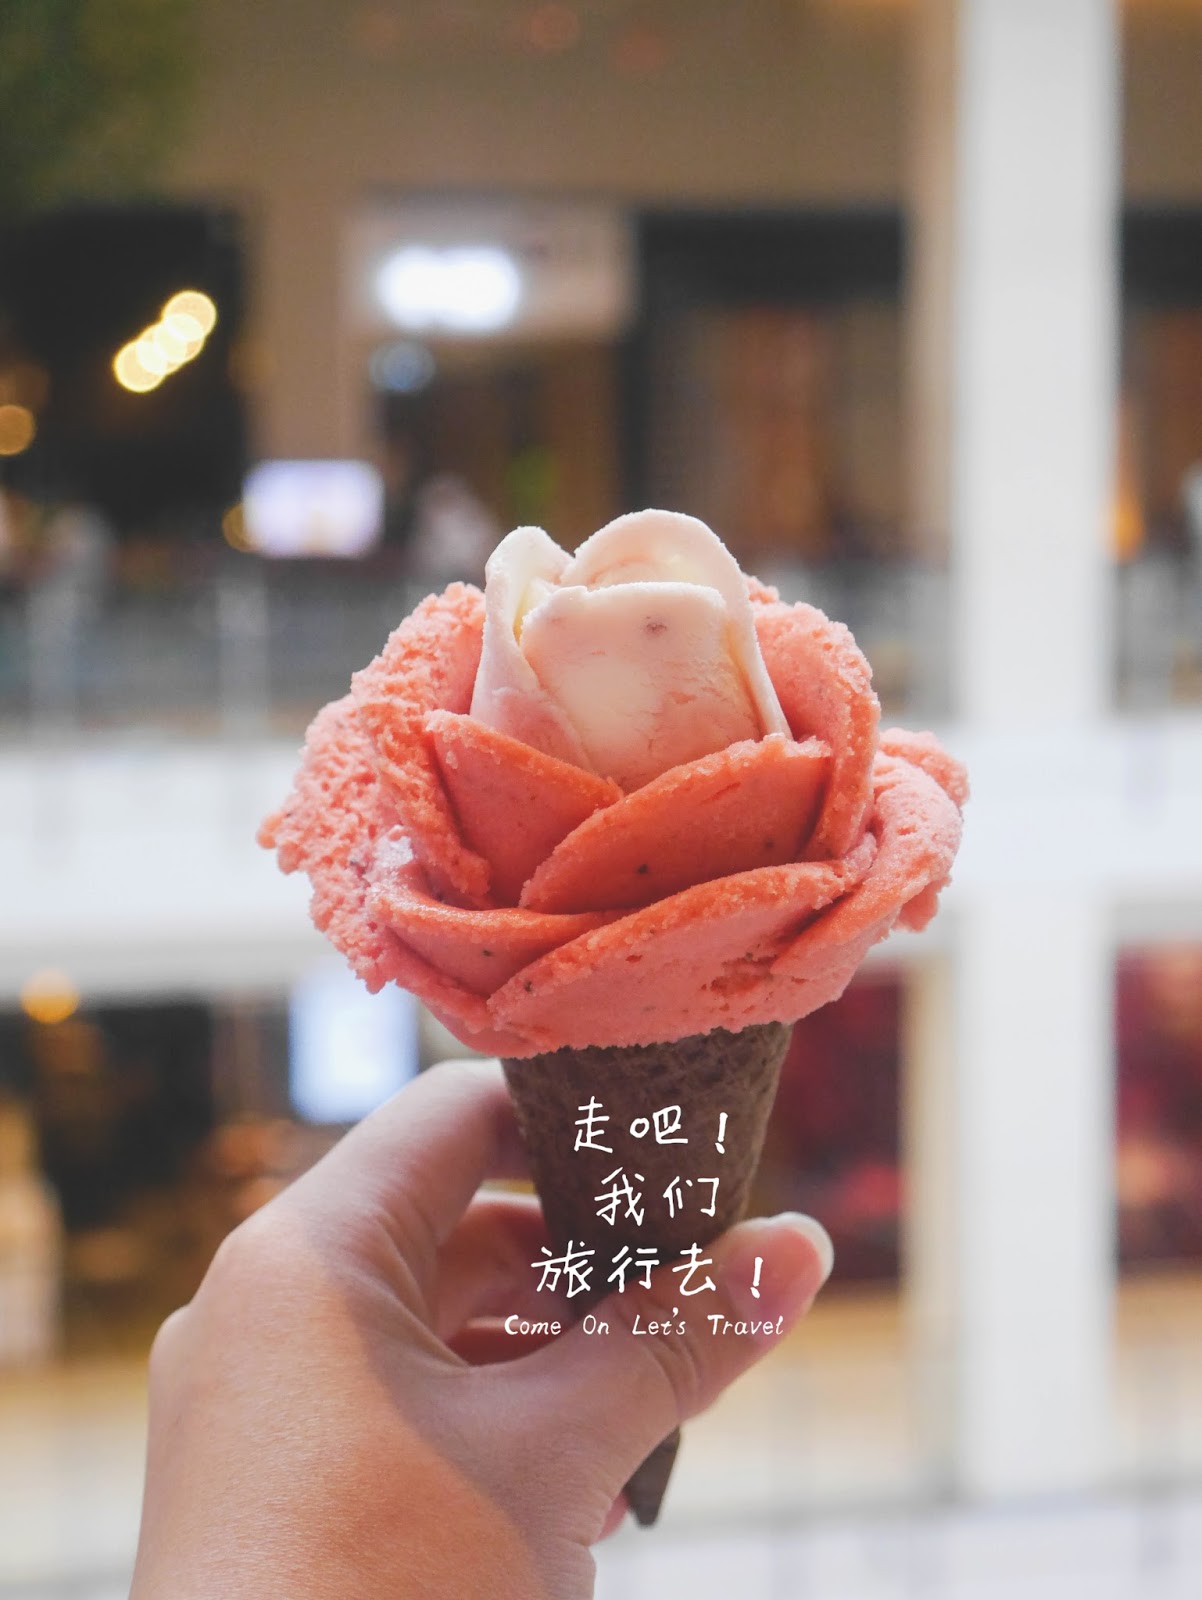 购买玫瑰花造型冰淇淋 有机会赢得总值1万6000令吉奖品 - 辣手网